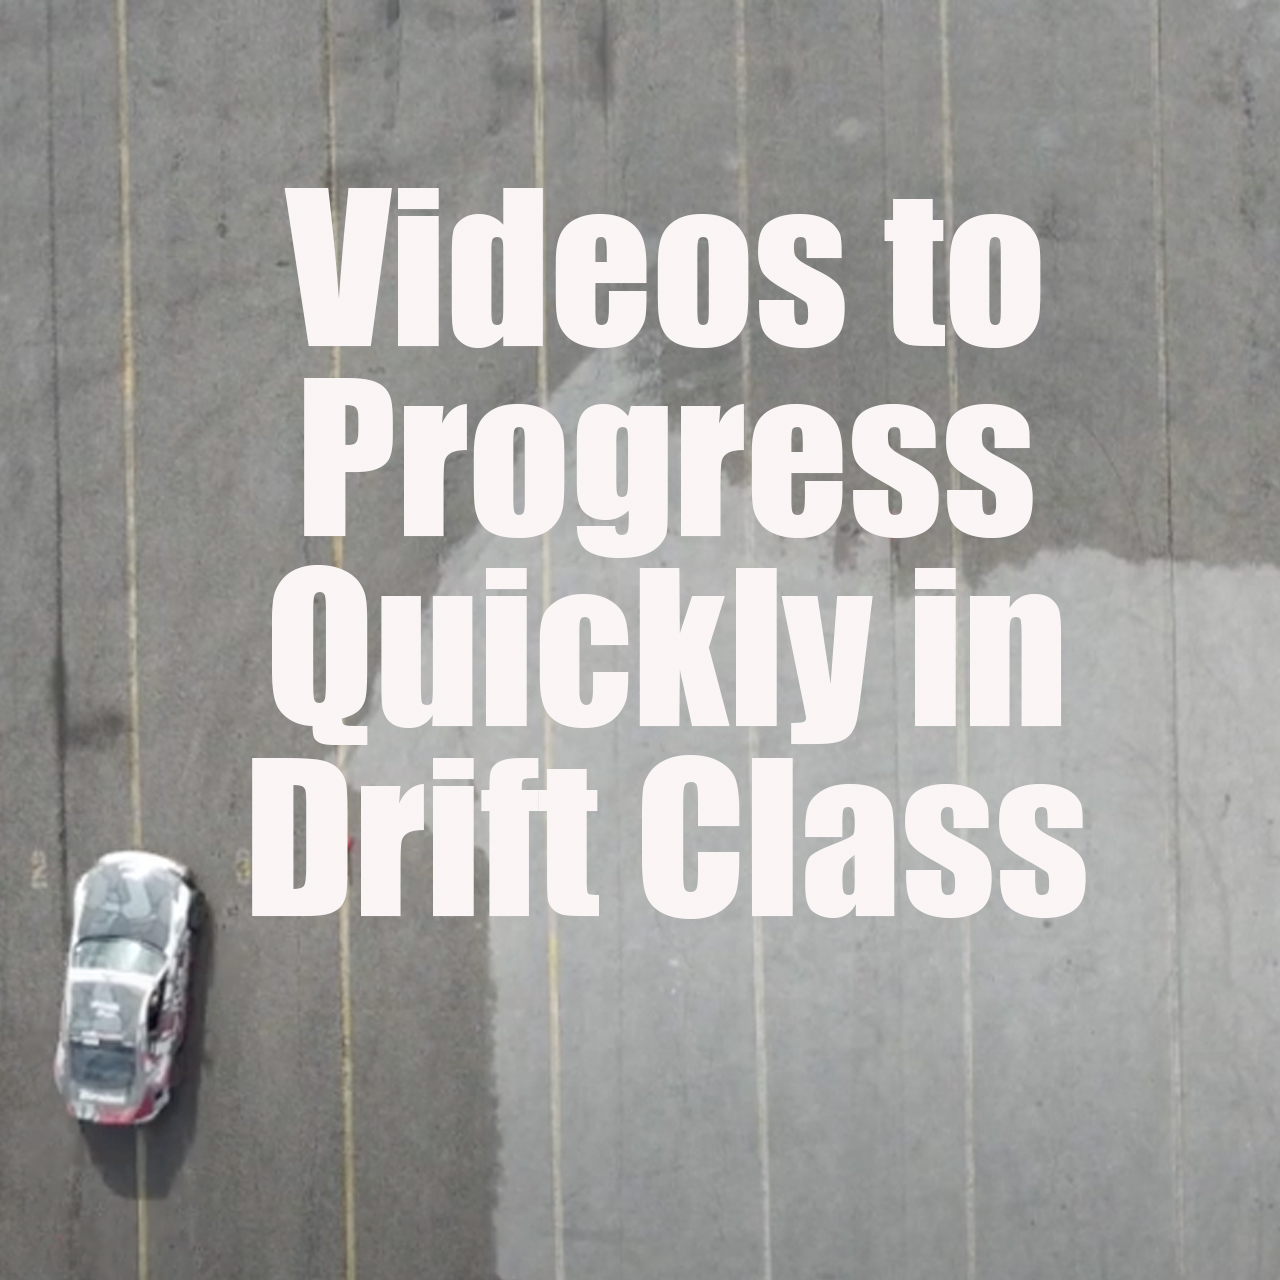 drift class videos